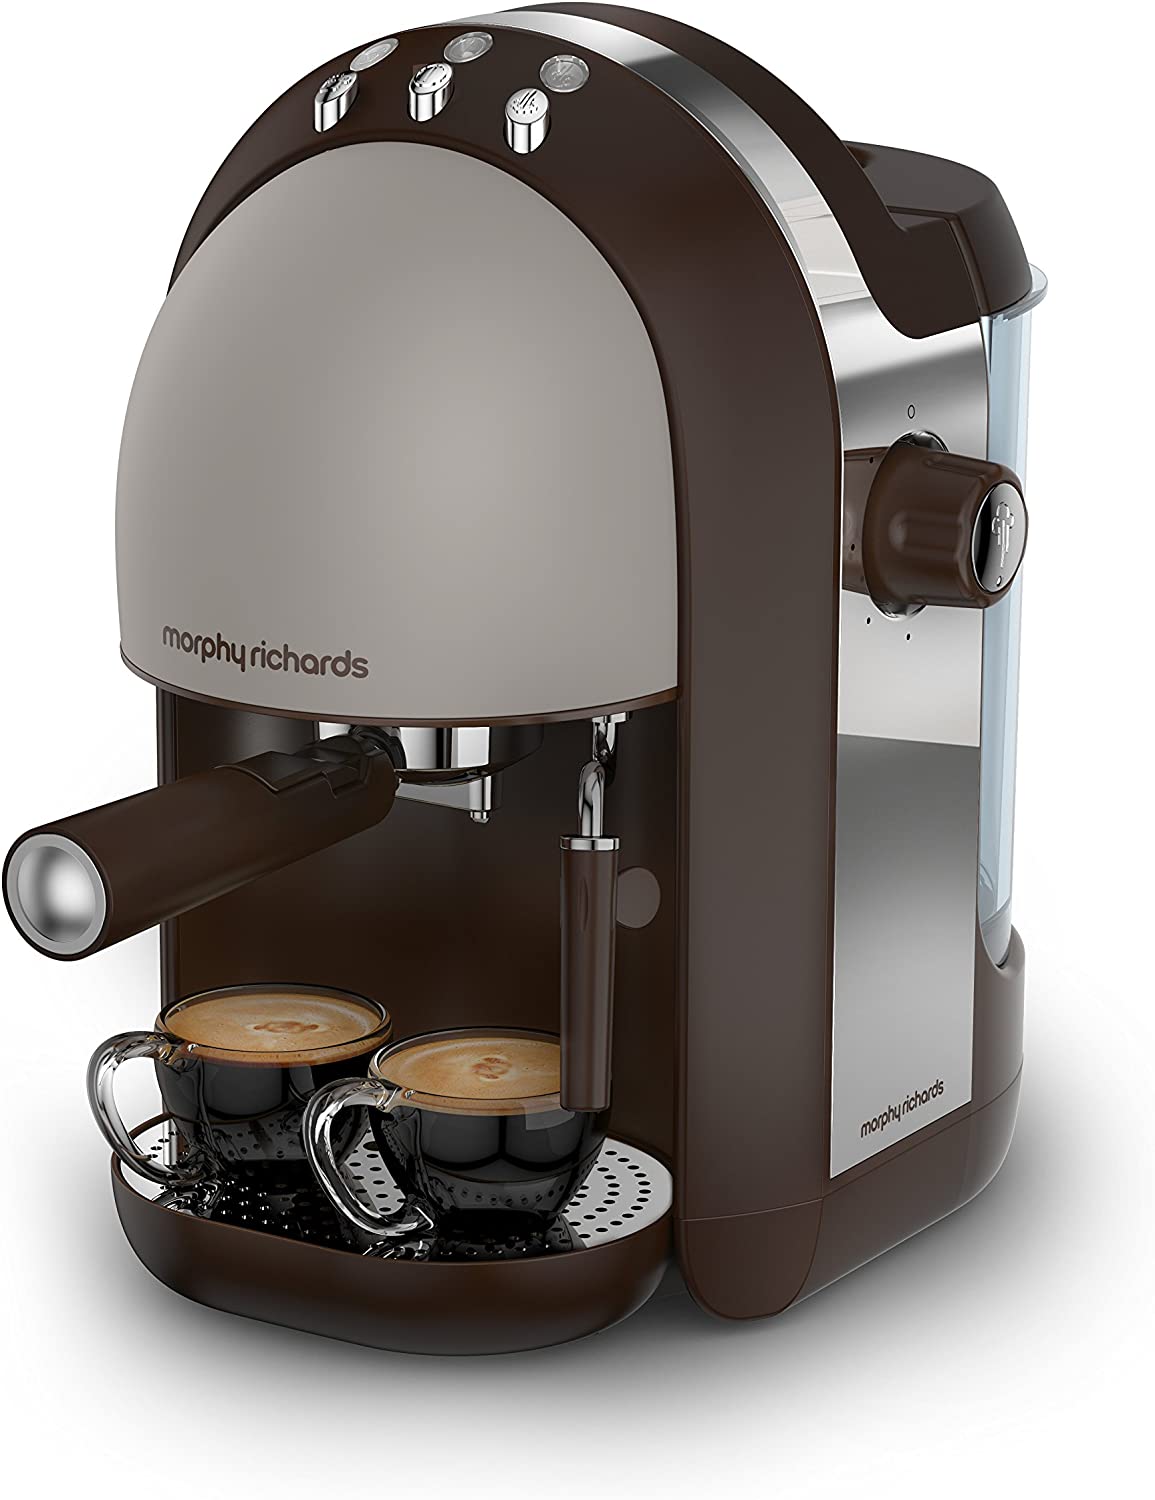 قهوه ساز مورفی ریچاردز مدل Morphy Richards 172005 240V 100W Accents Coffee Maker - ارسال 10 الی 15 روز کاری